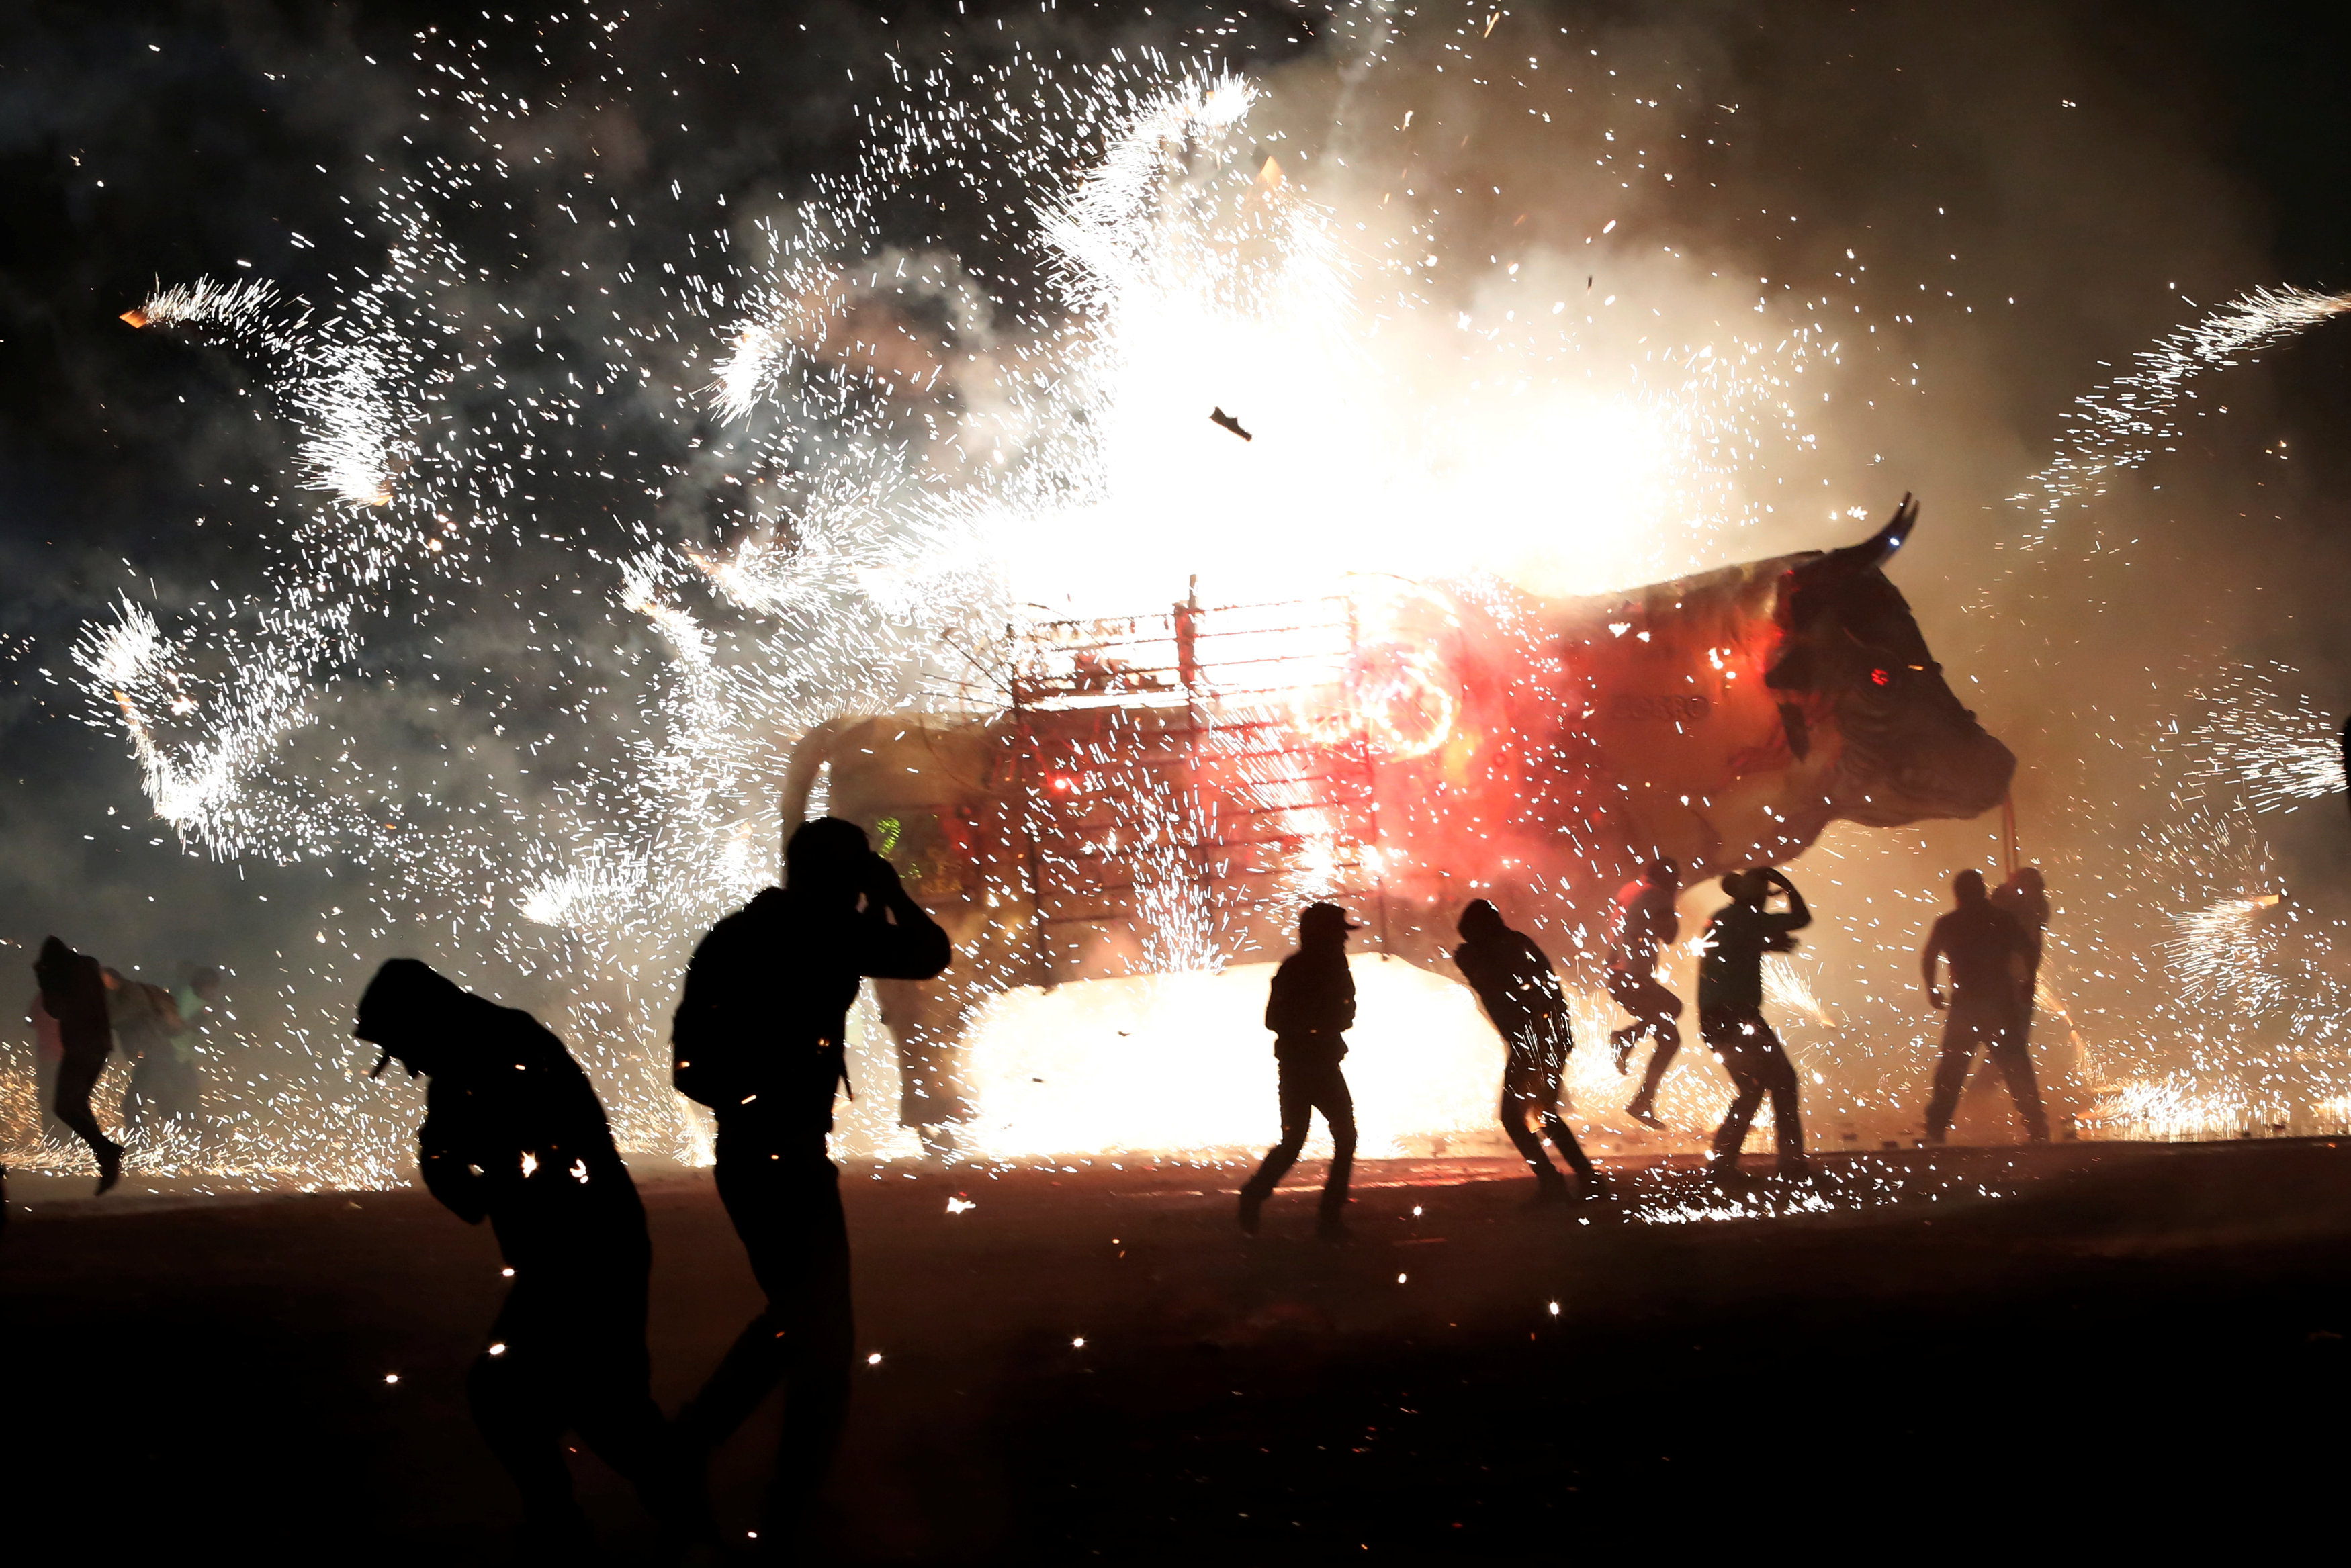 إصابة 499 شخصا بسبب الألعاب النارية خلال احتفالات المكسيك